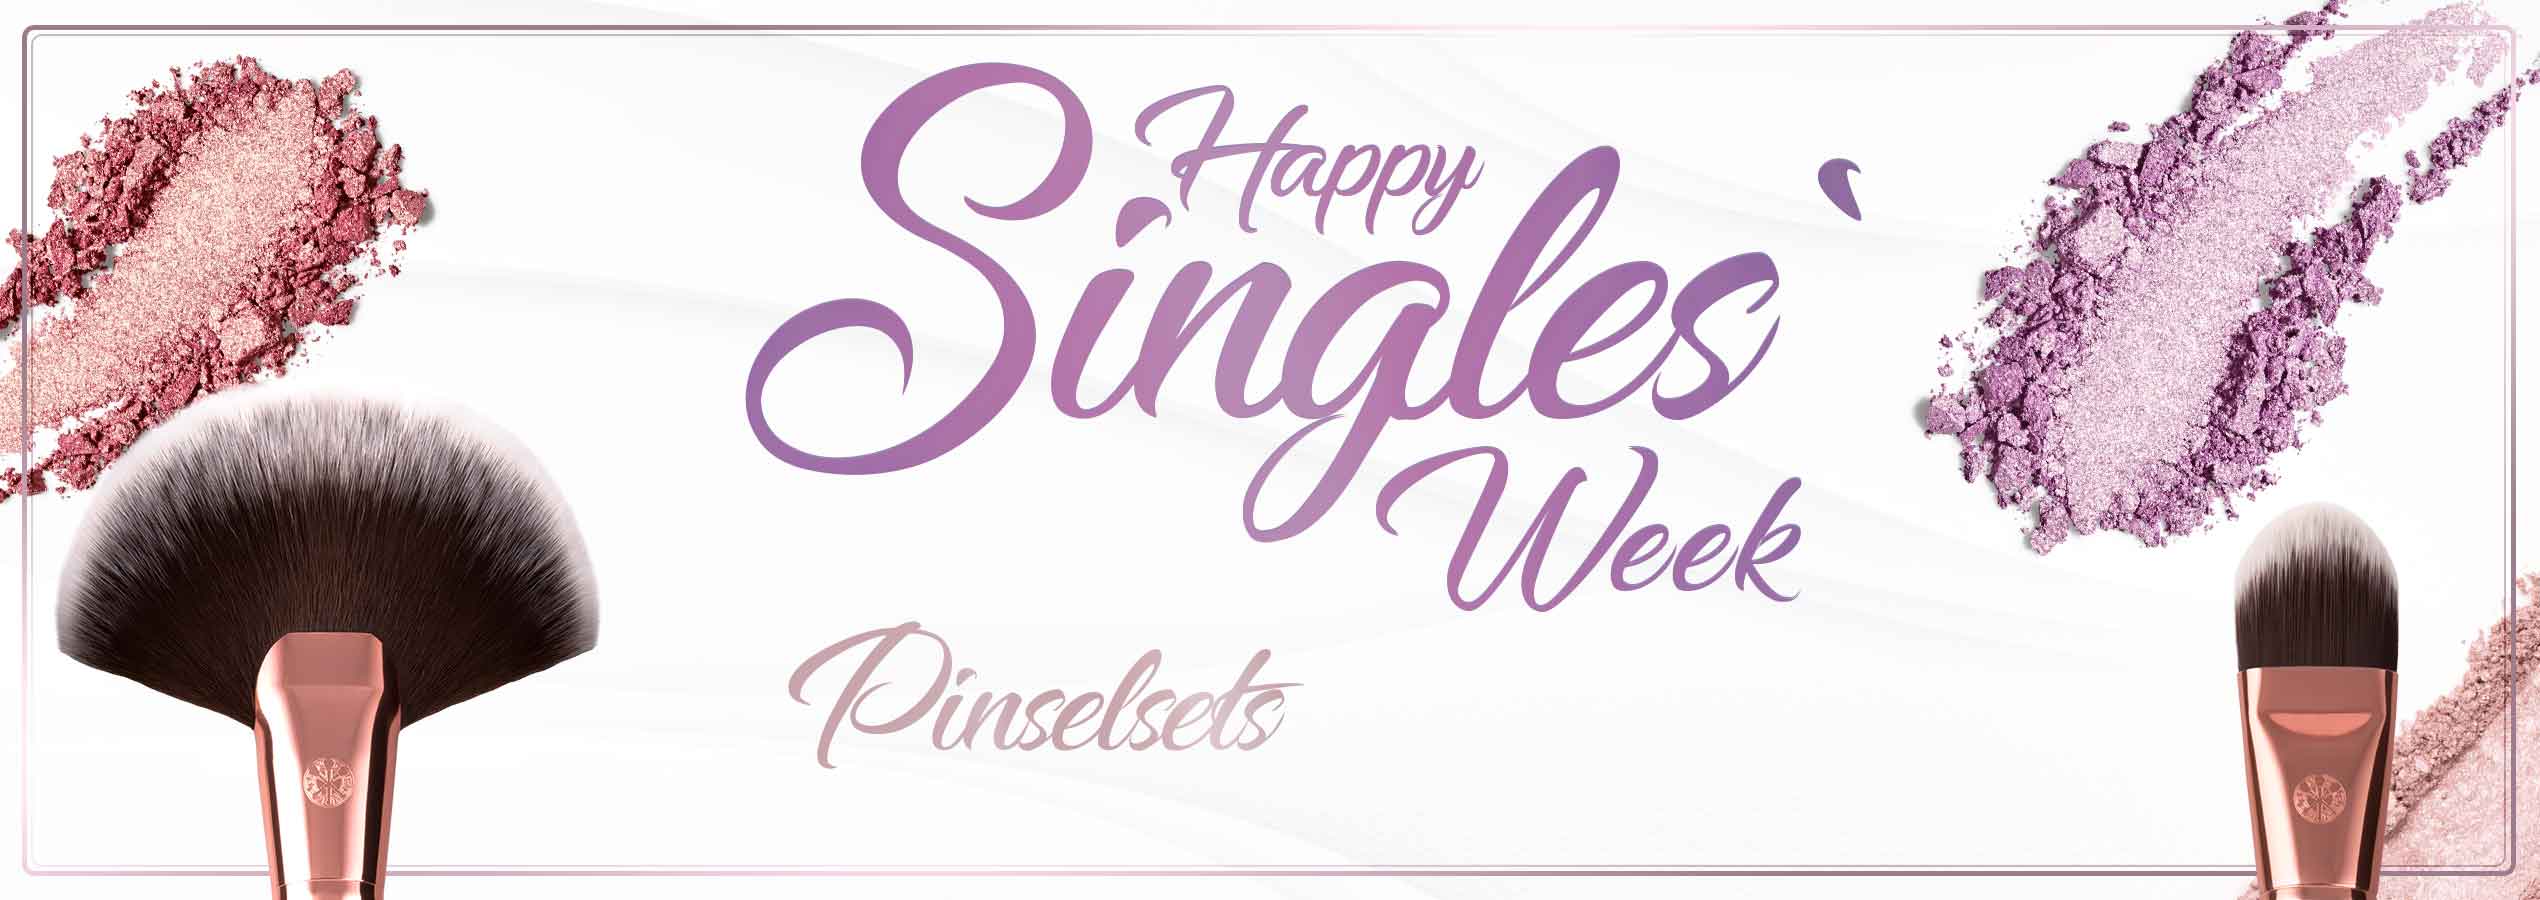 Singles Week / Pinselsets